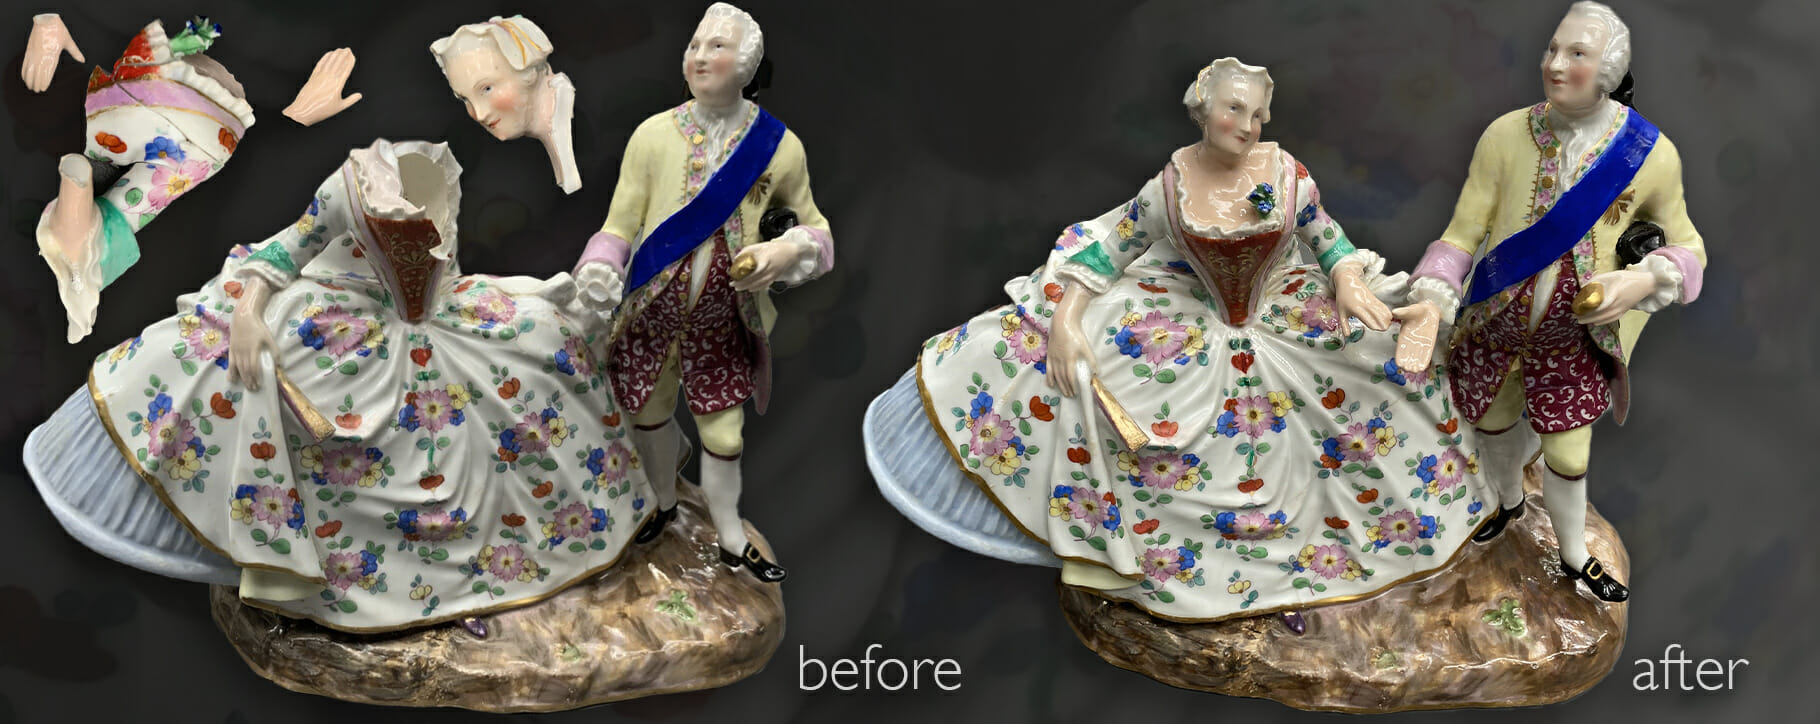 Meissen figurine restoration